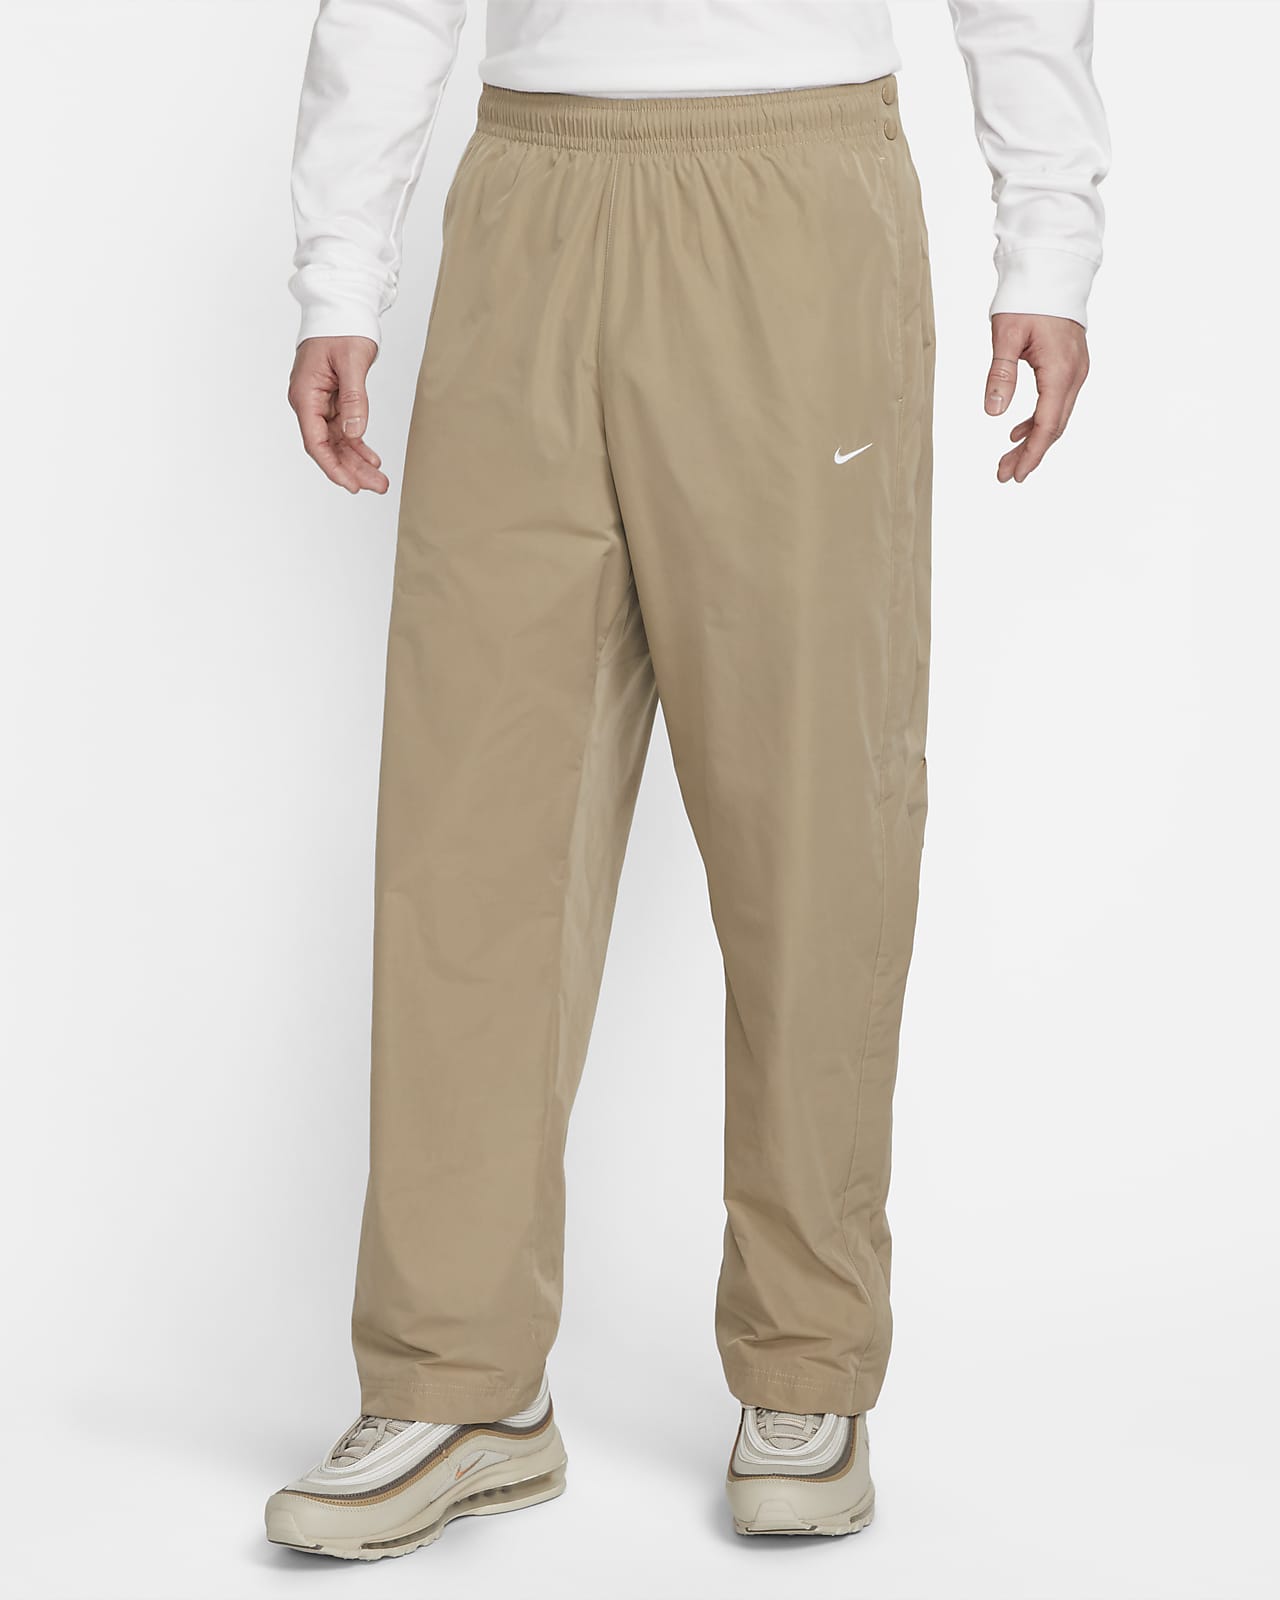  Basketball Tearaway Pants